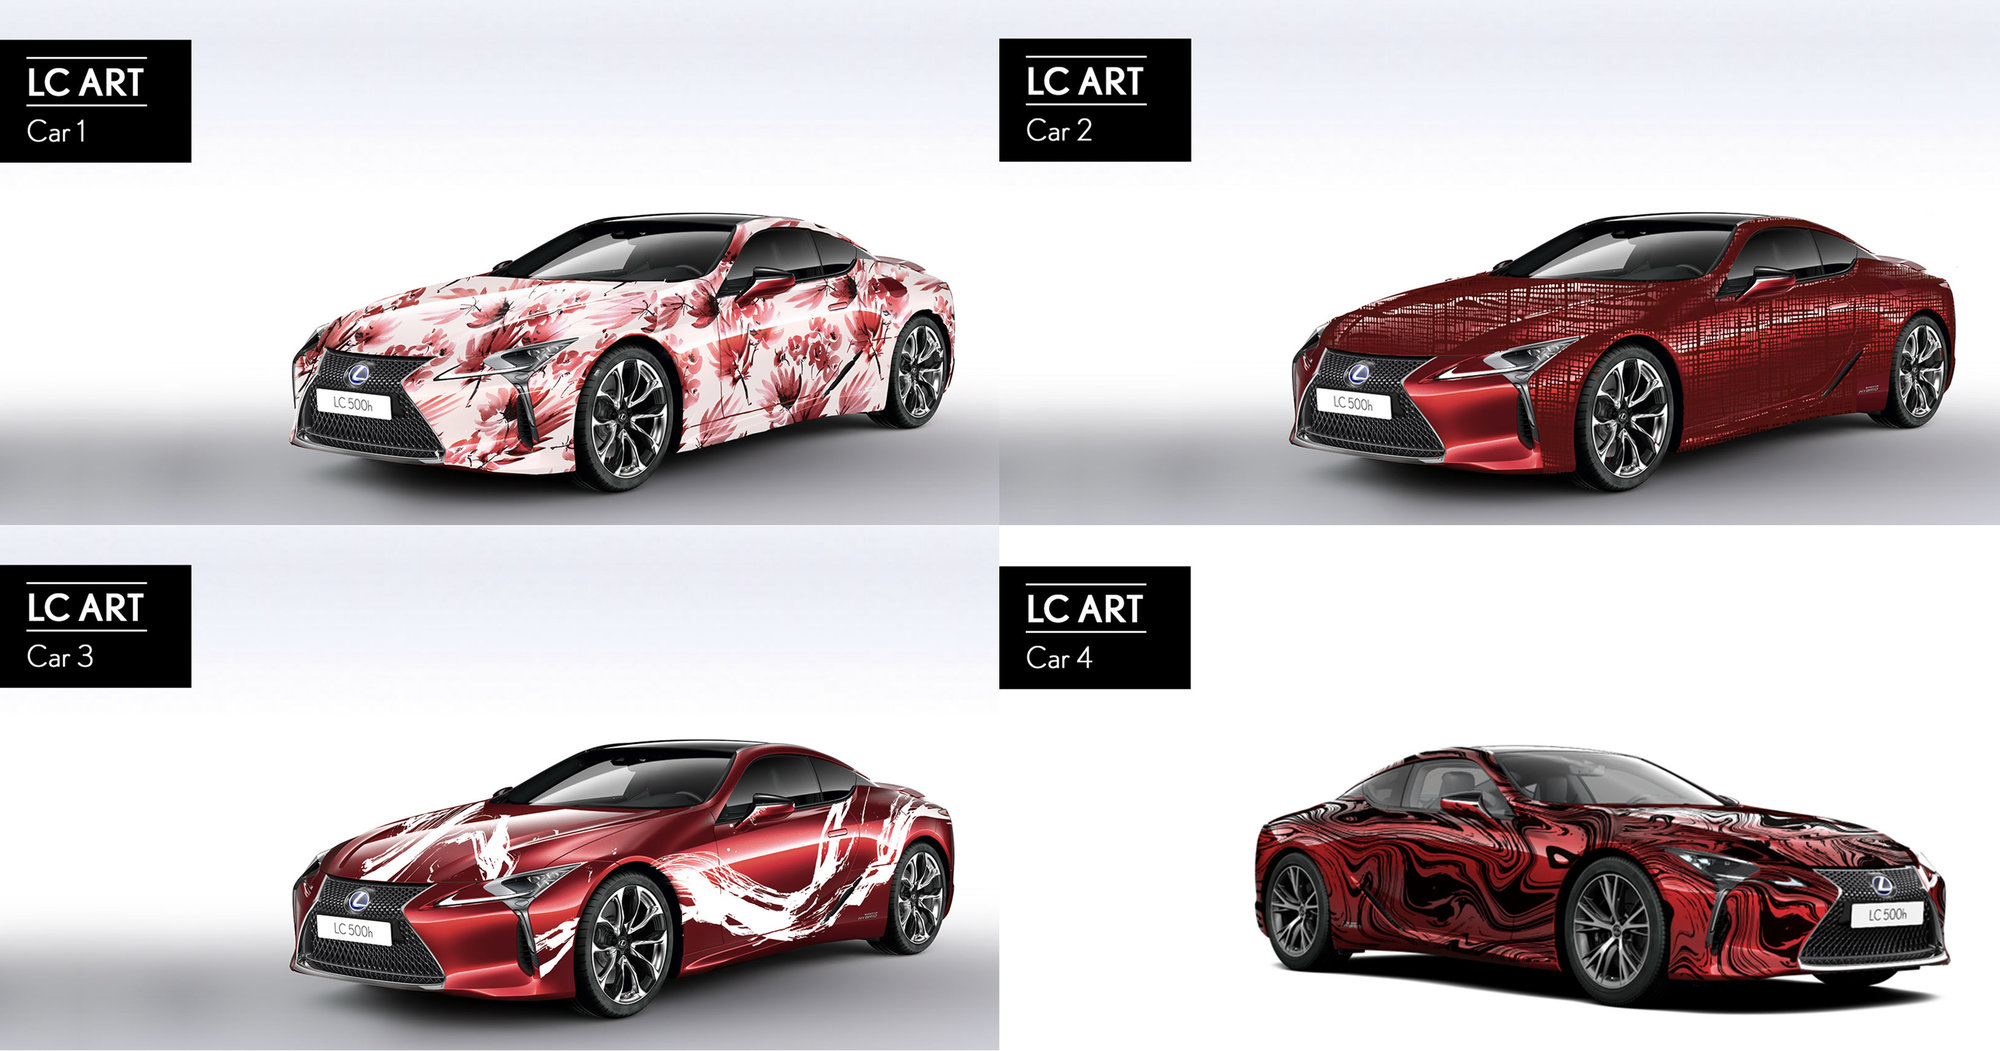 Lexus convoca el concurso ‘Art Car-LC 500h’ en redes sociales